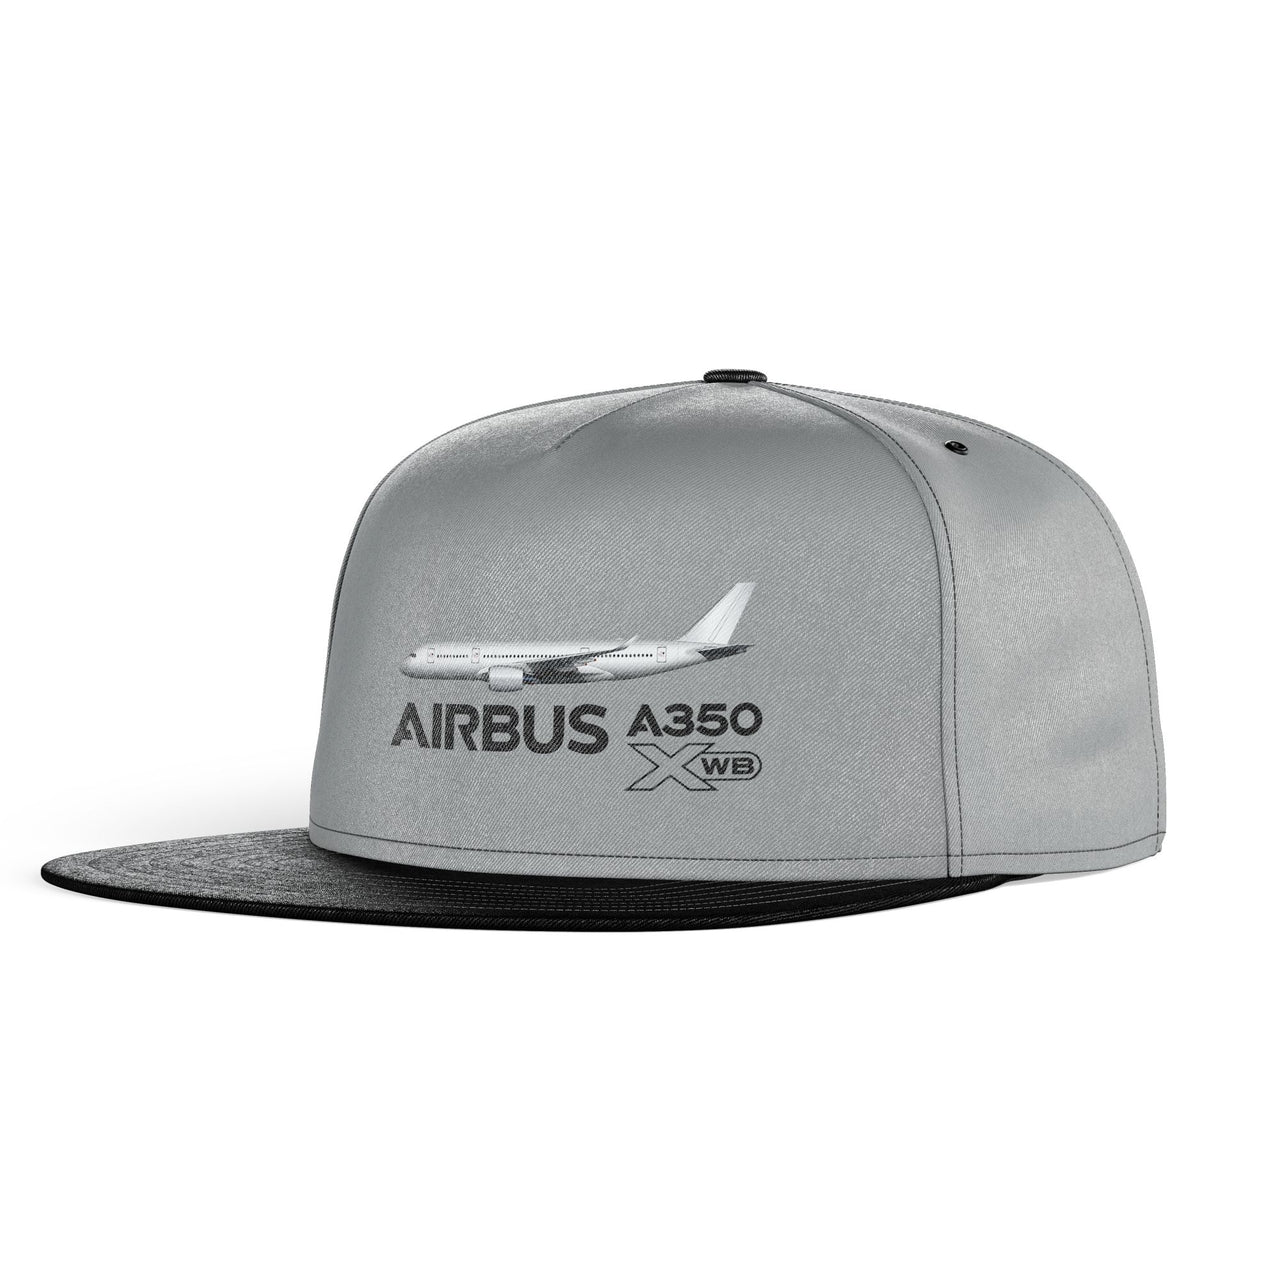 The Airbus A350 WXB Designed Snapback Caps & Hats